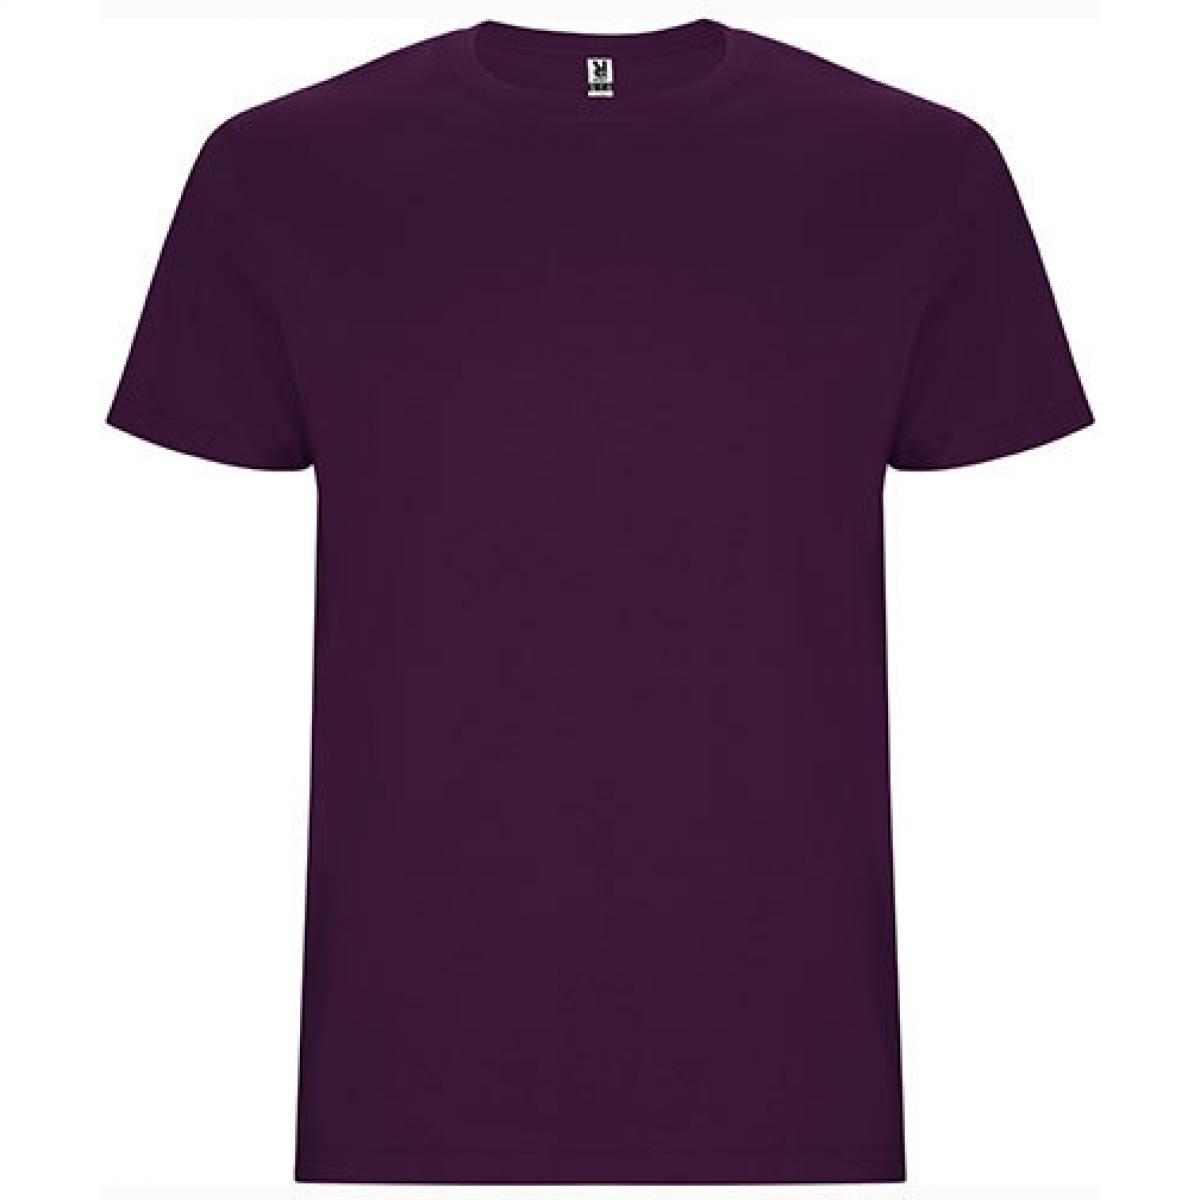 Hersteller: Roly Herstellernummer: CA6681 Artikelbezeichnung: Stafford T-Shirt - Doppellagiger Rundhalskragen Farbe: Purple 71